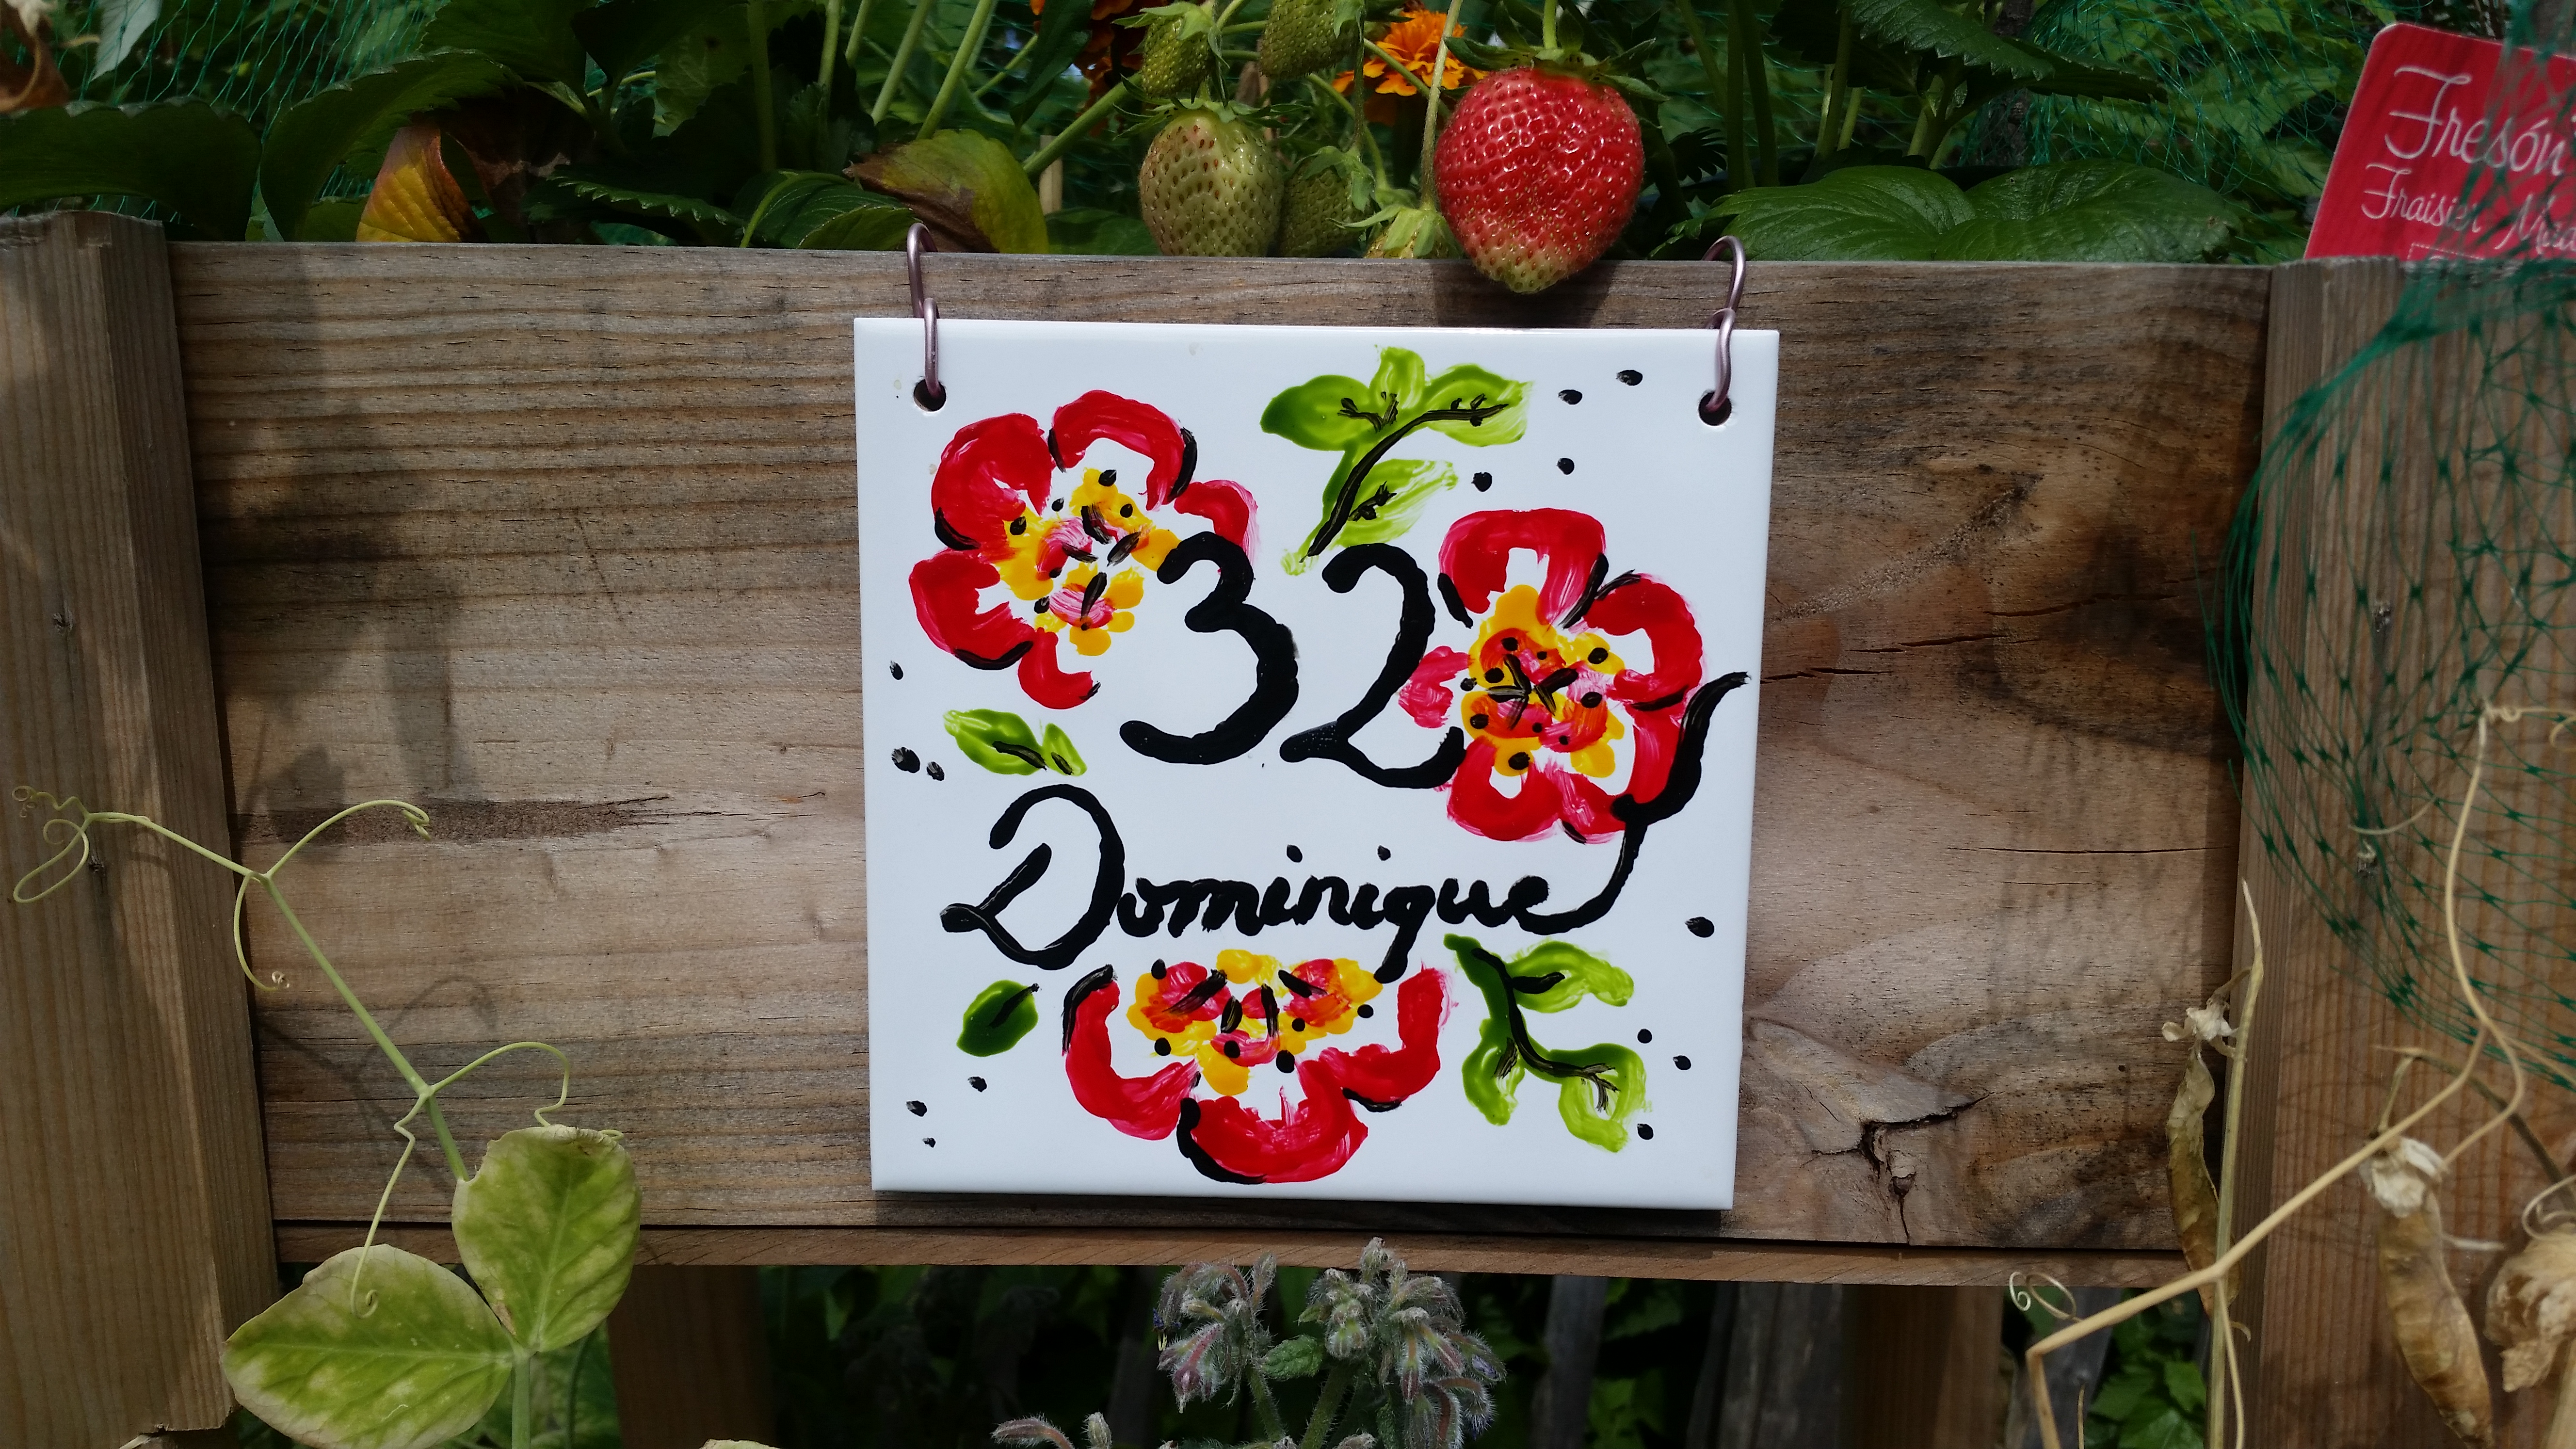 32 Dominique